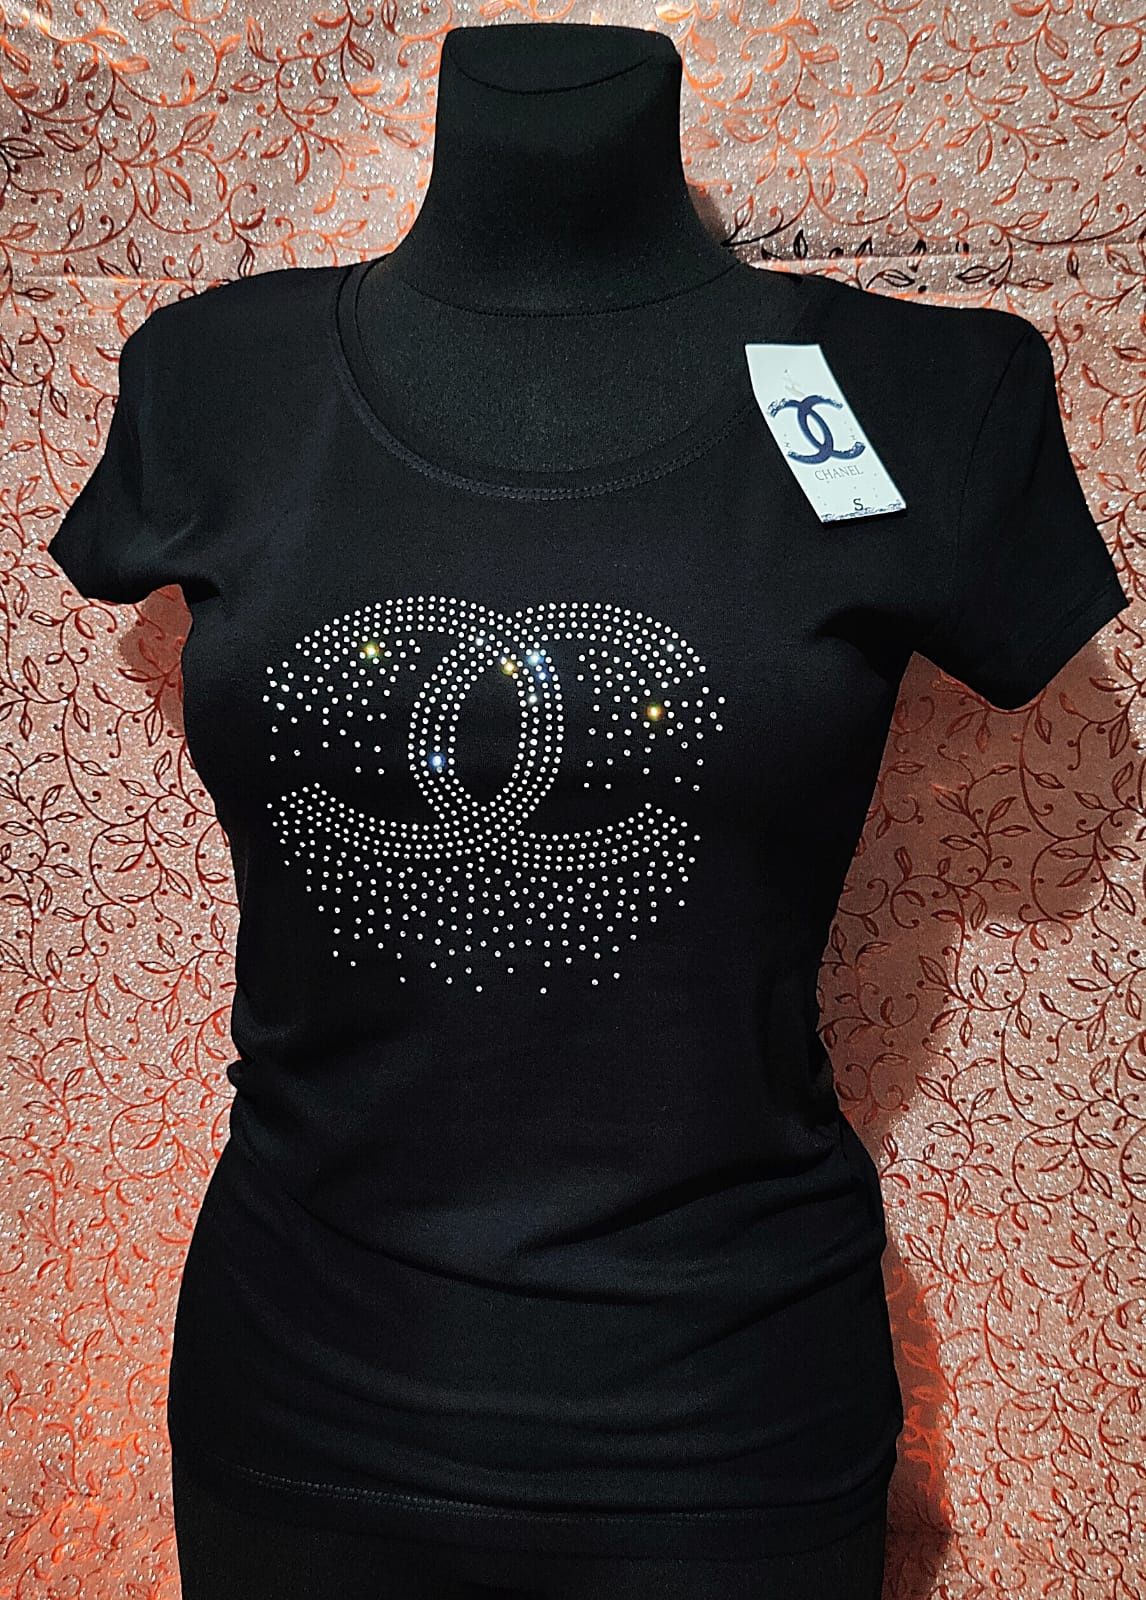 Czarna koszulka damska Chanel S M L XL wysyłka pobranie bardzo ładna